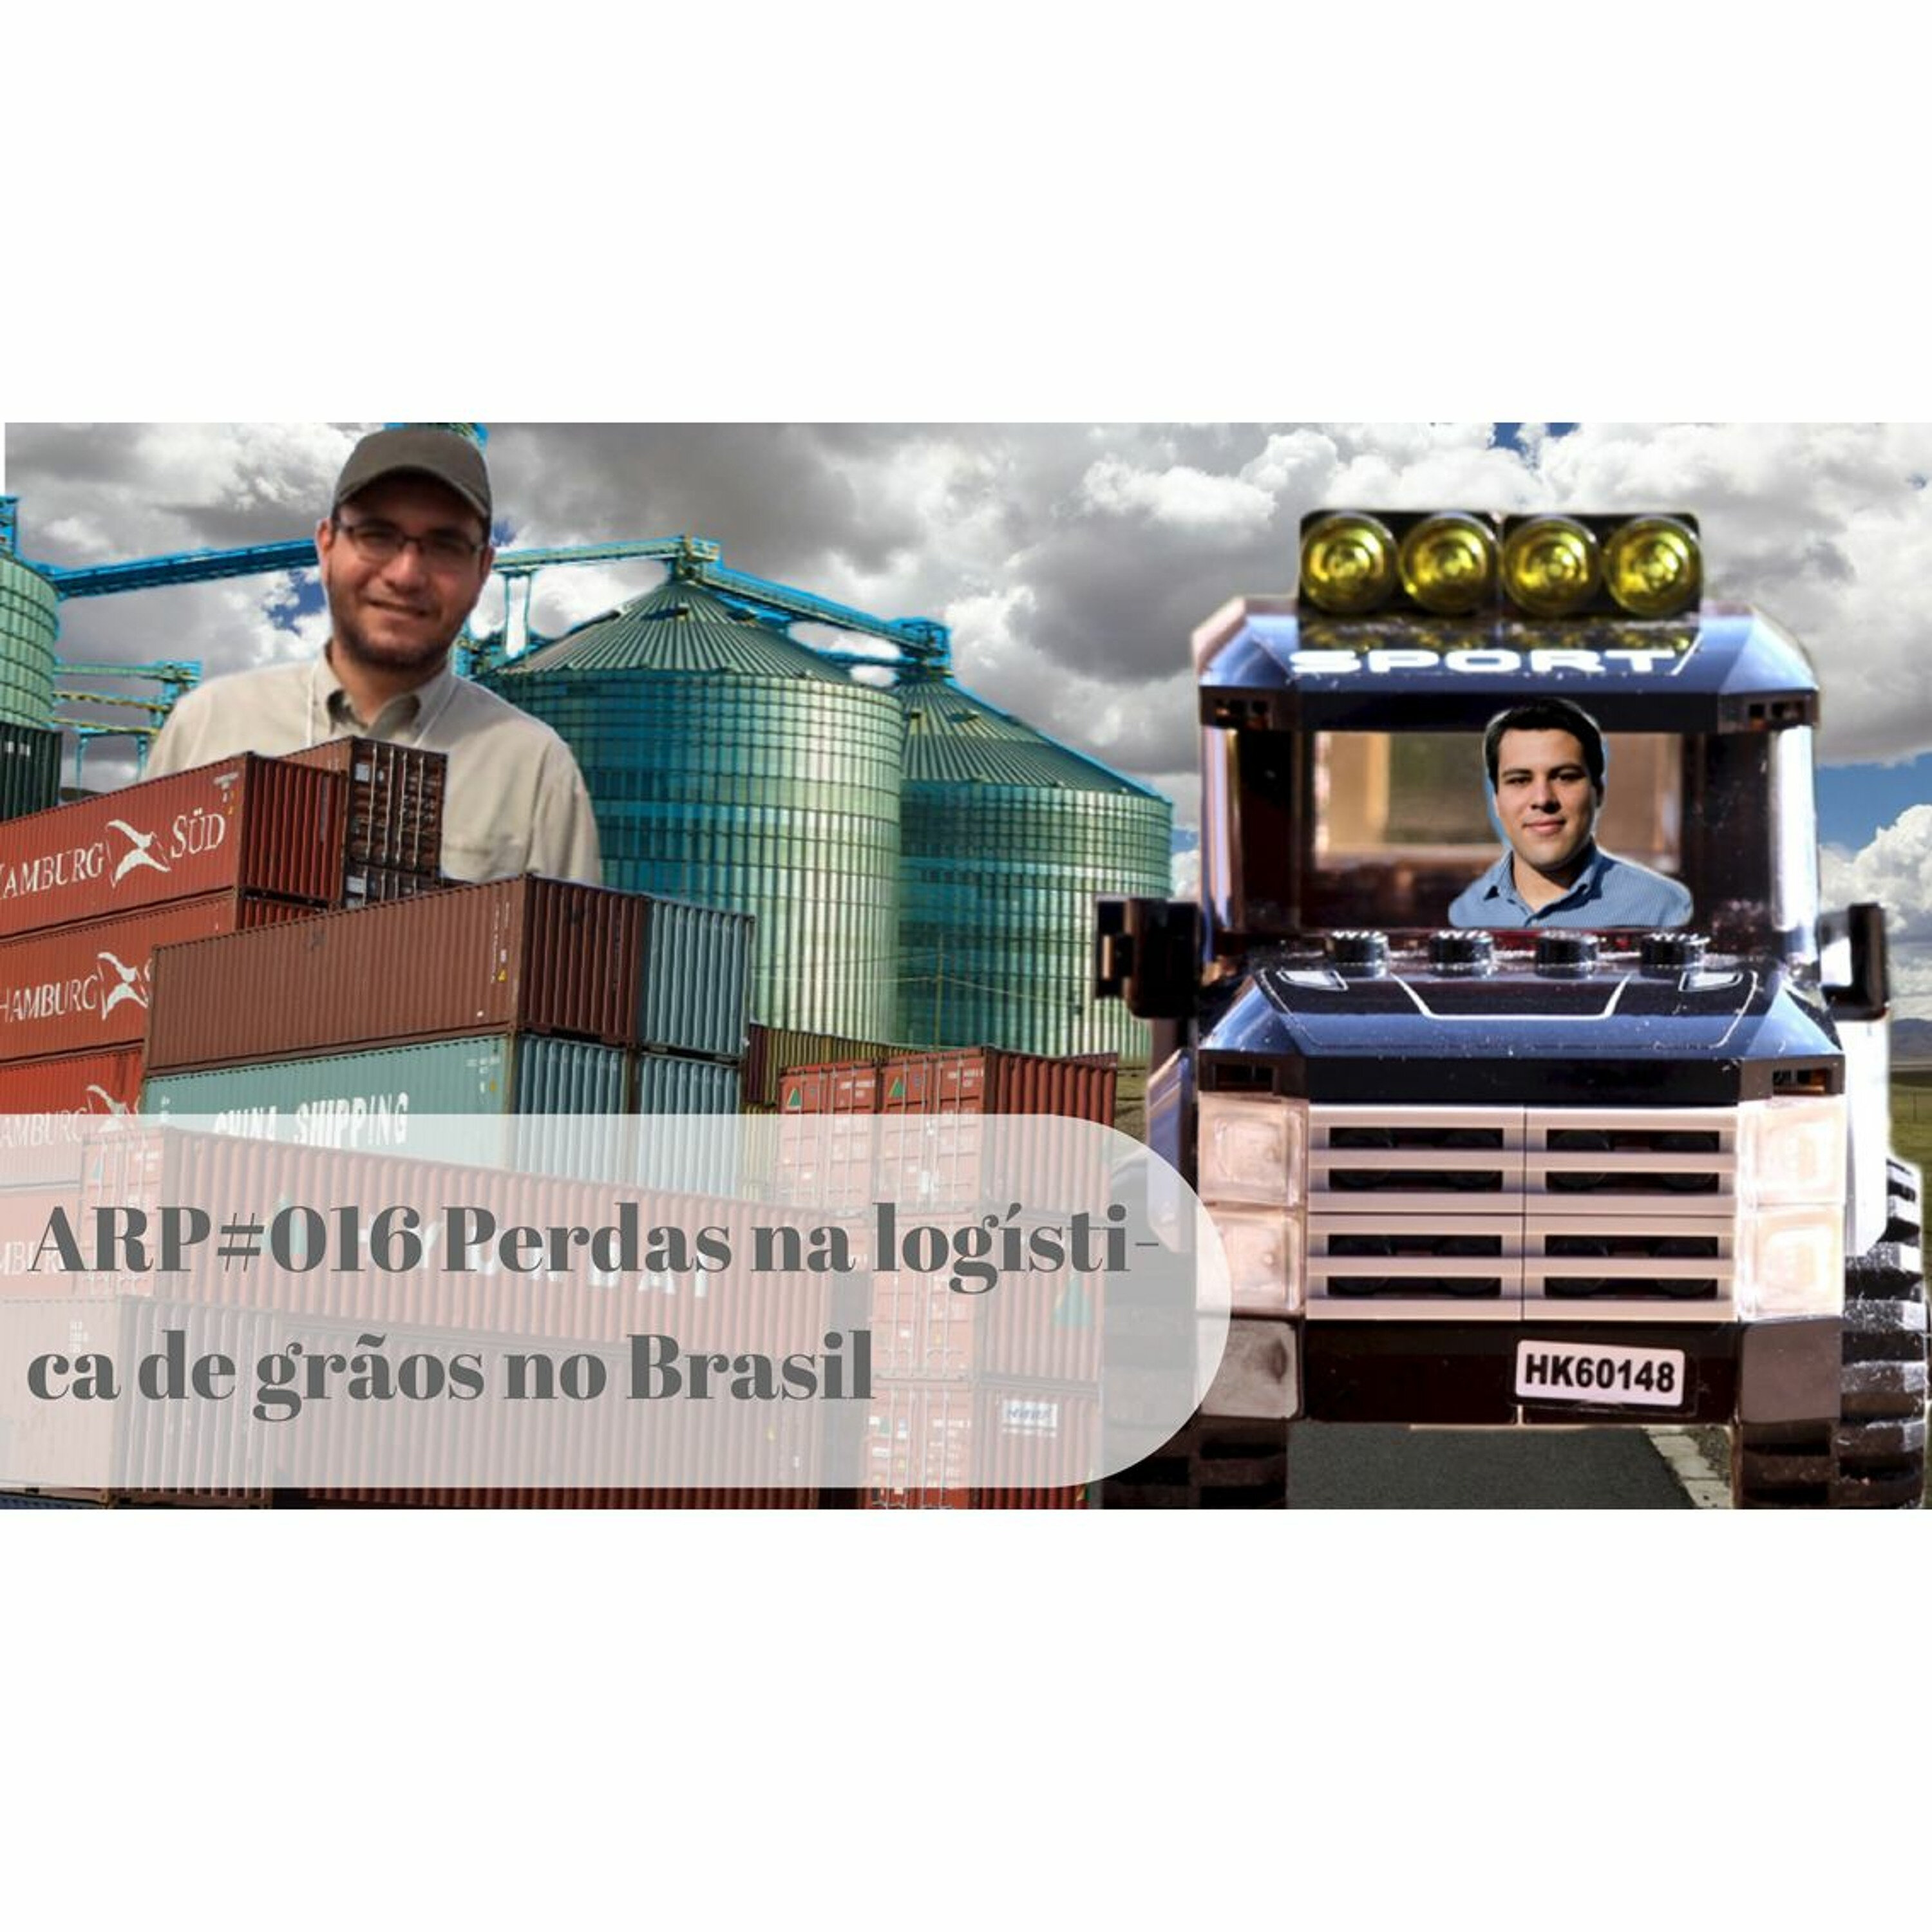 ARP#016 - Perdas na logística de grãos no Brasil